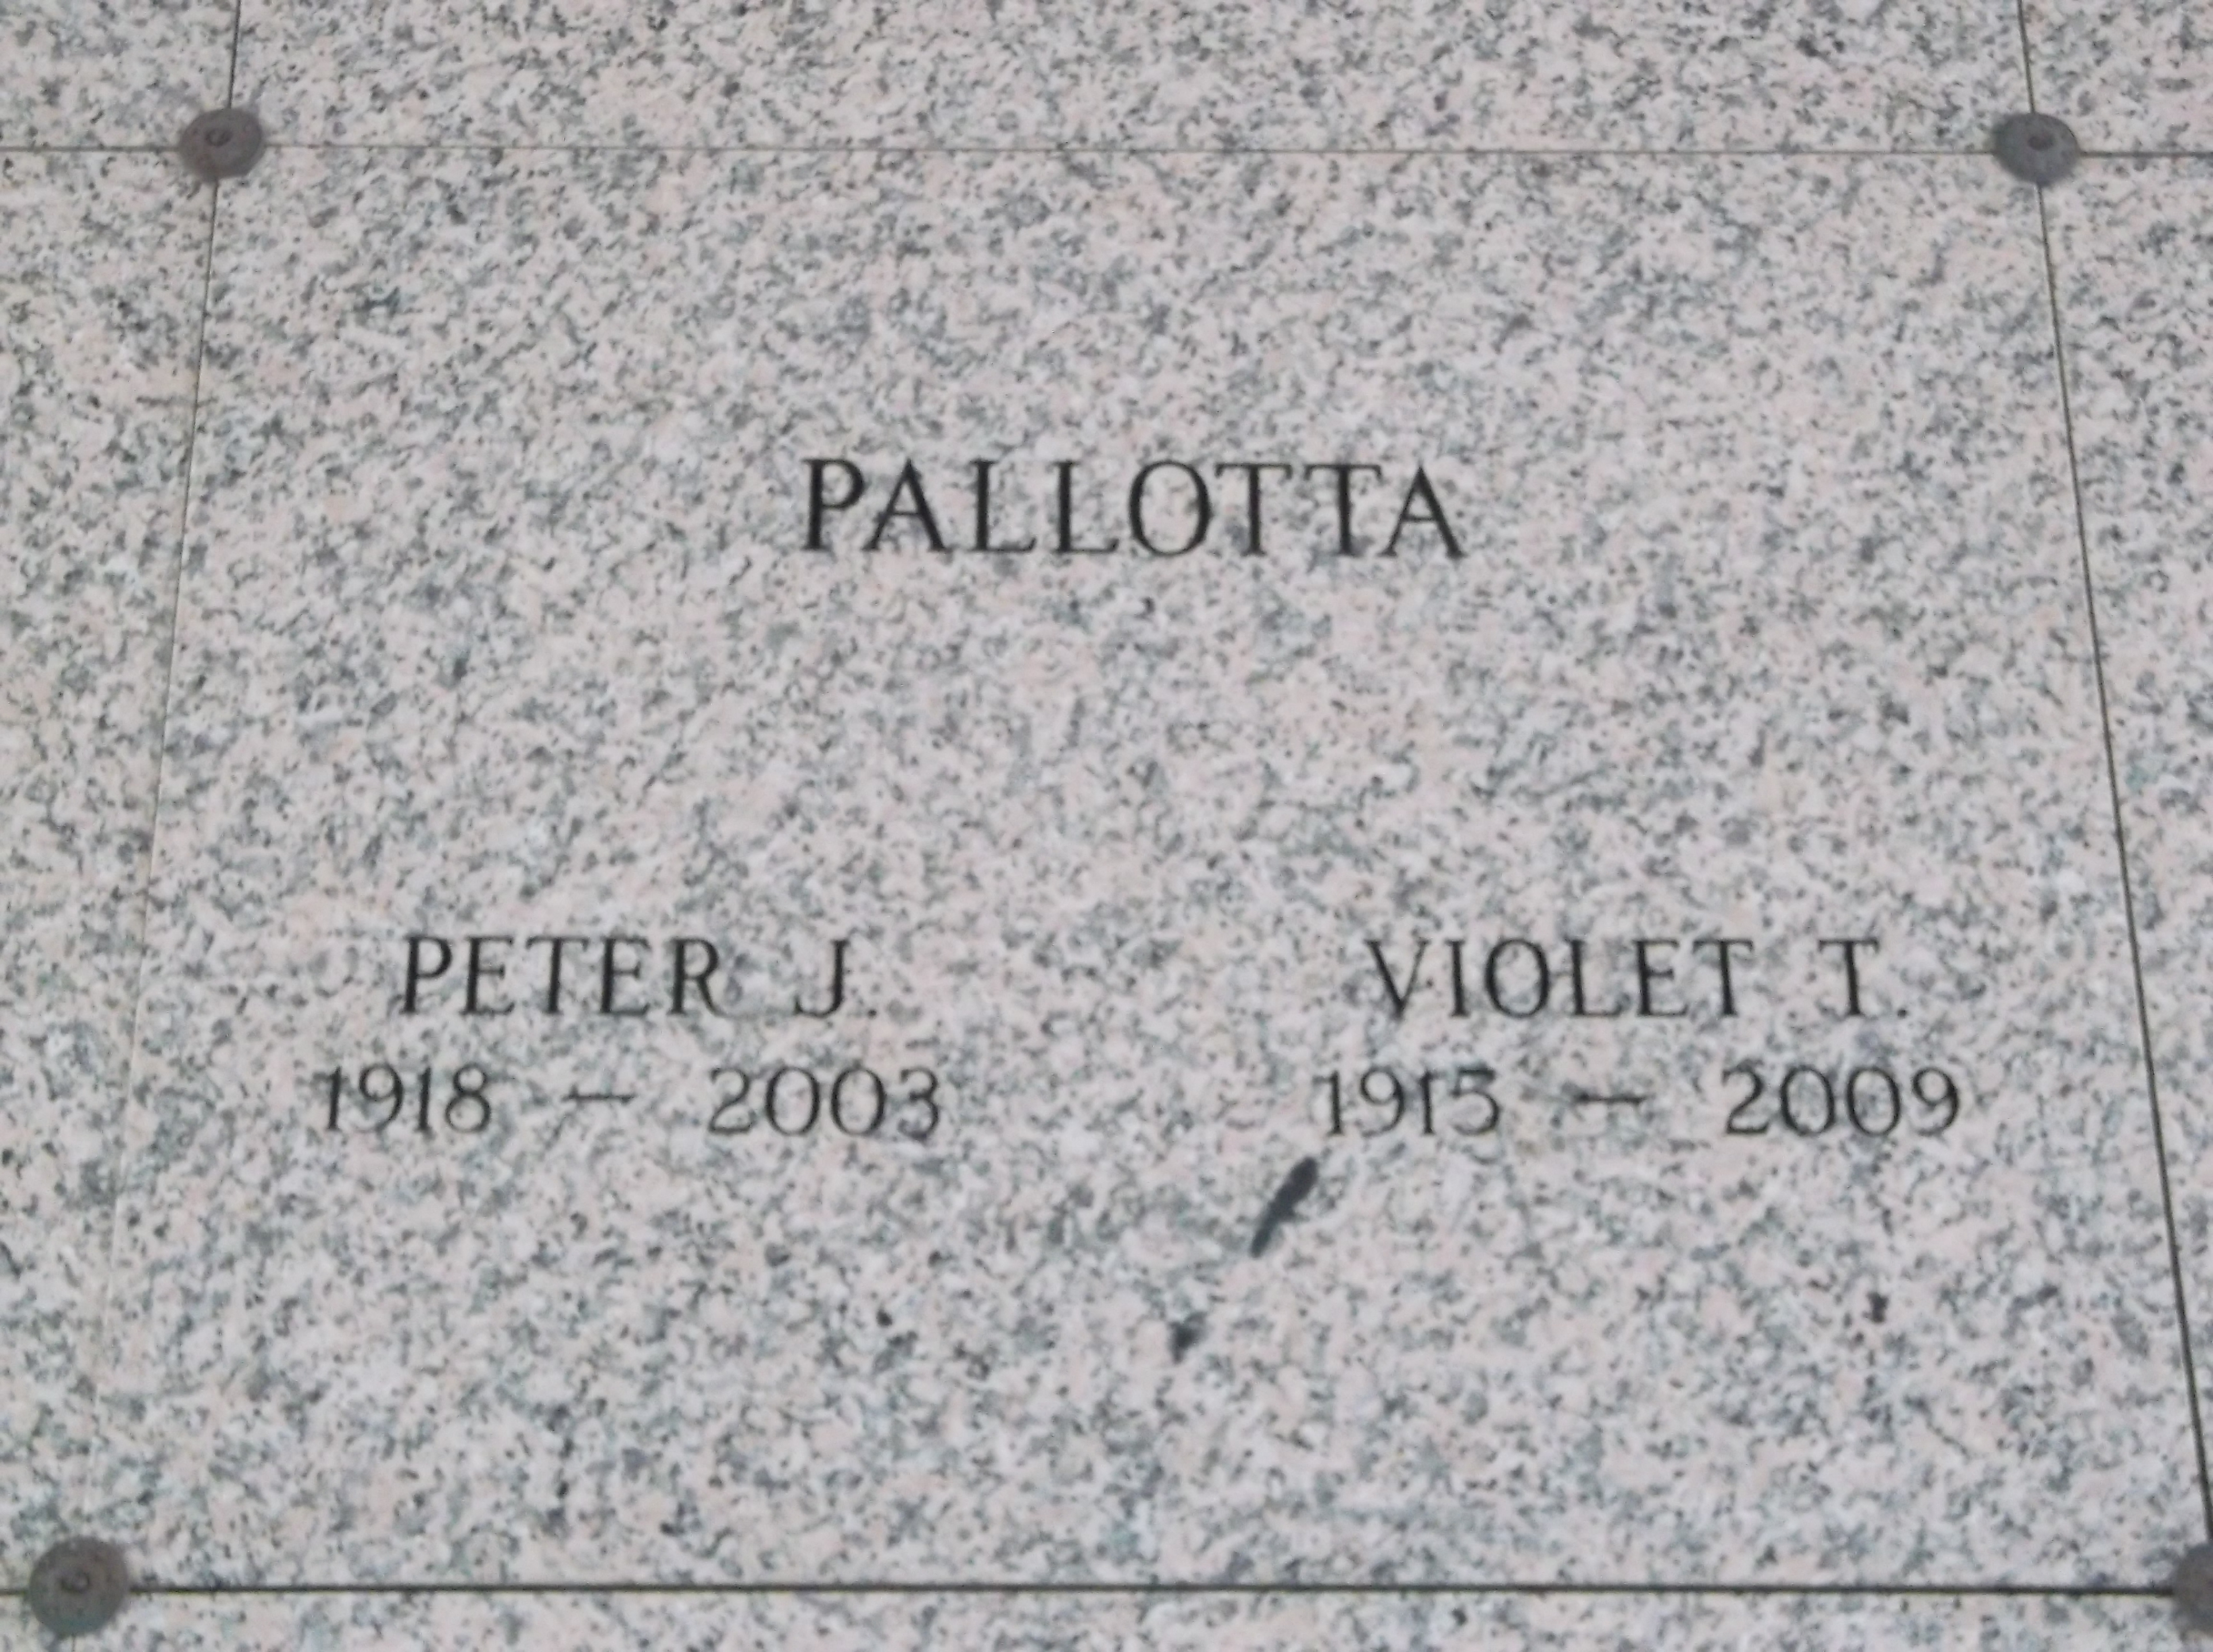 Violet T Pallotta